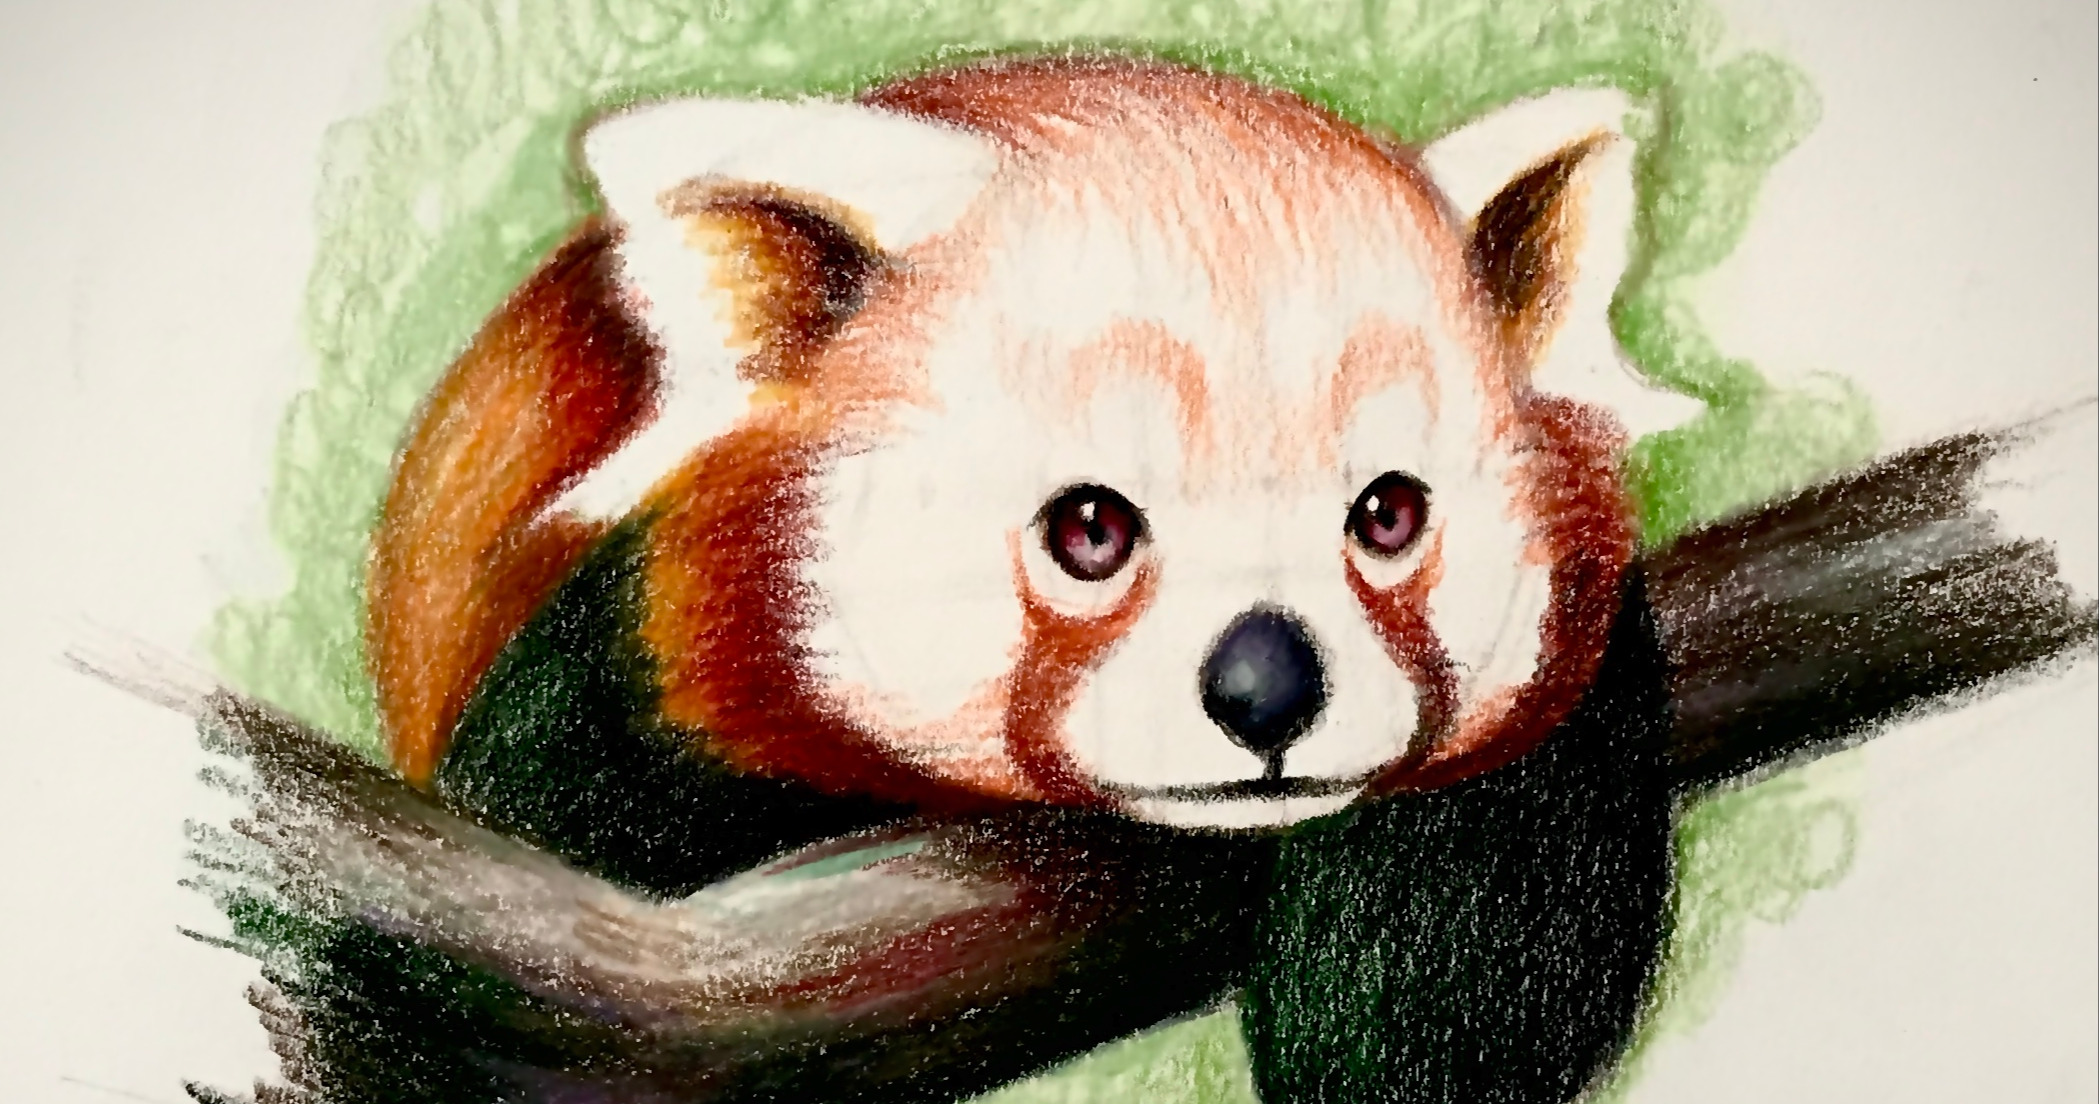 panda illustration - Google Search  Panda art, Cute panda, Panda painting